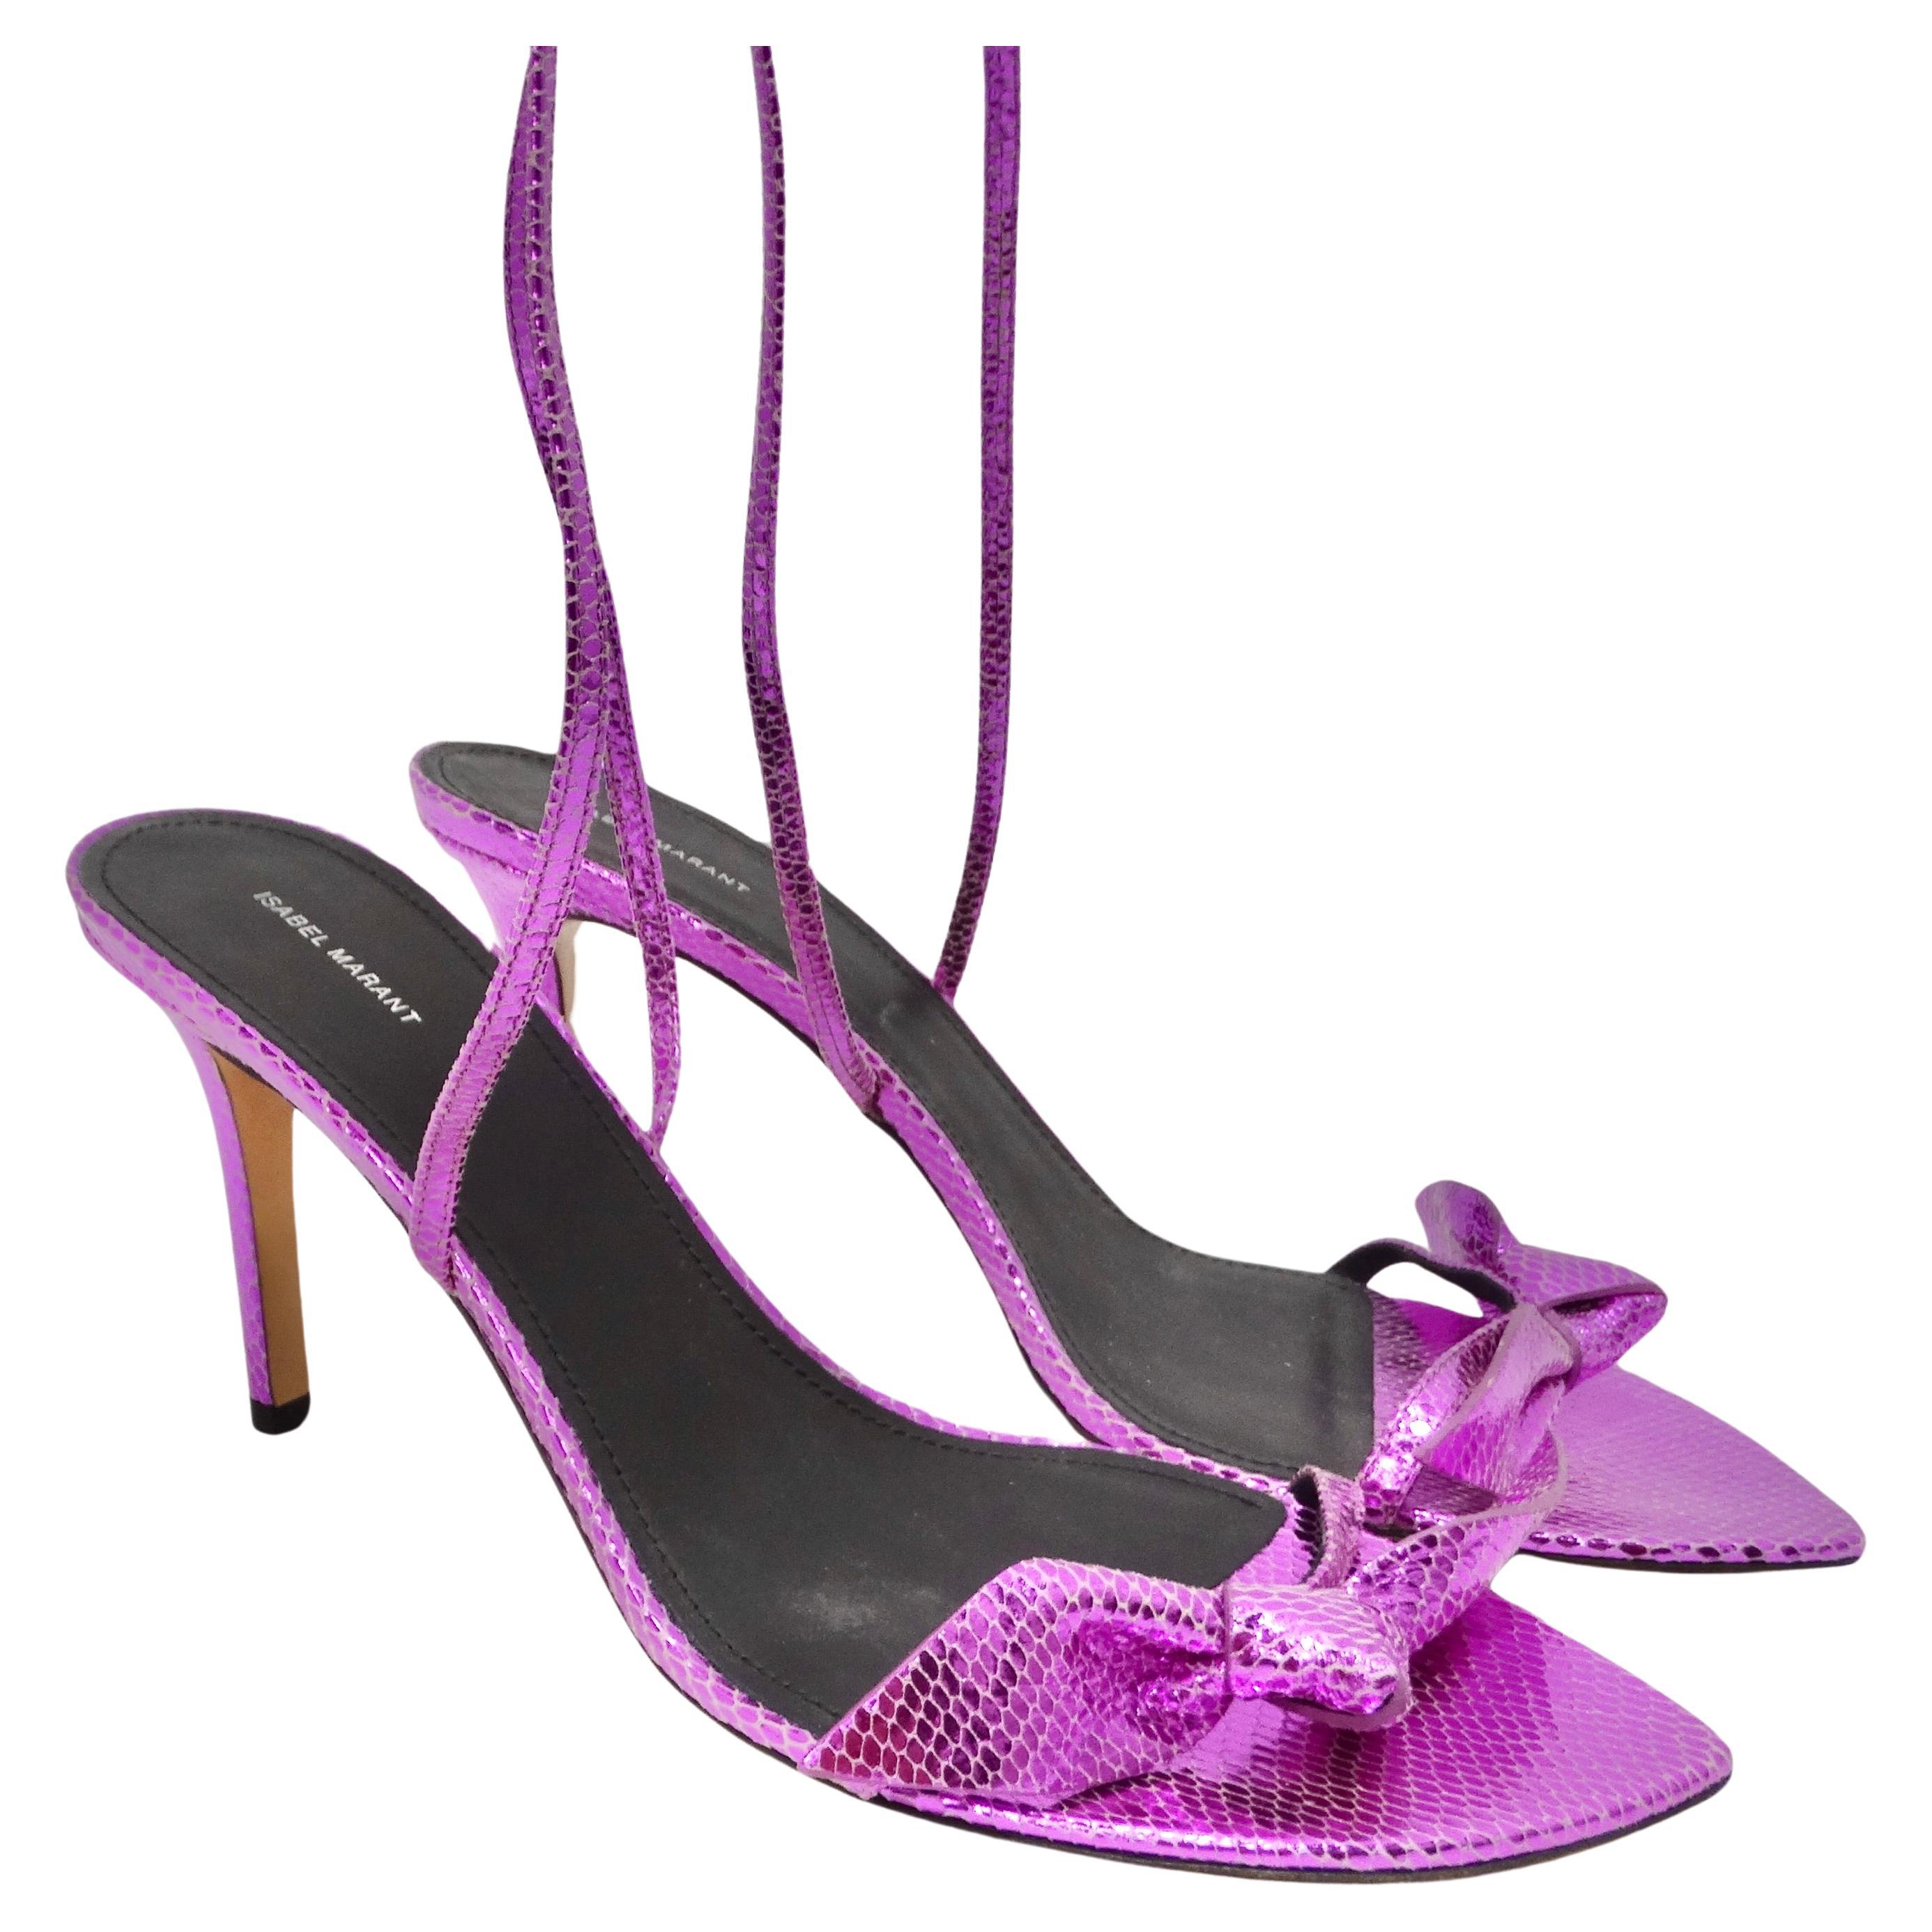 Treten Sie ins Rampenlicht mit der lilafarbenen Leder-Absatzsandale von Isabel Marant - ein Paar Absätze, das die Mode mit einem kühnen und lebendigen Twist neu definiert. Diese Absätze sind nicht einfach nur Schuhe, sie sind ein Statement, eine